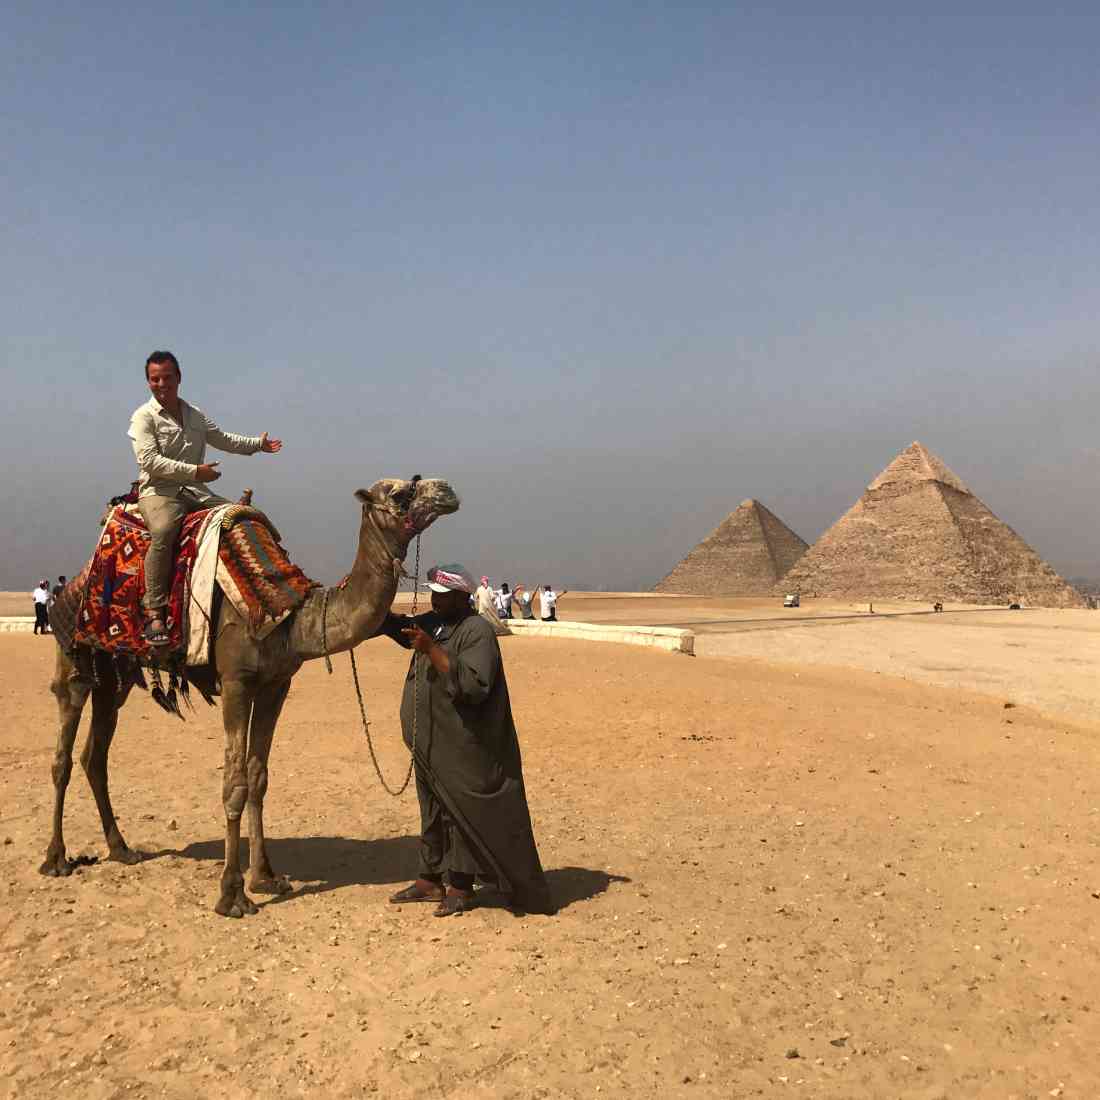 IMG_6663 - Pyramids at Giza Camel Ride.JPG